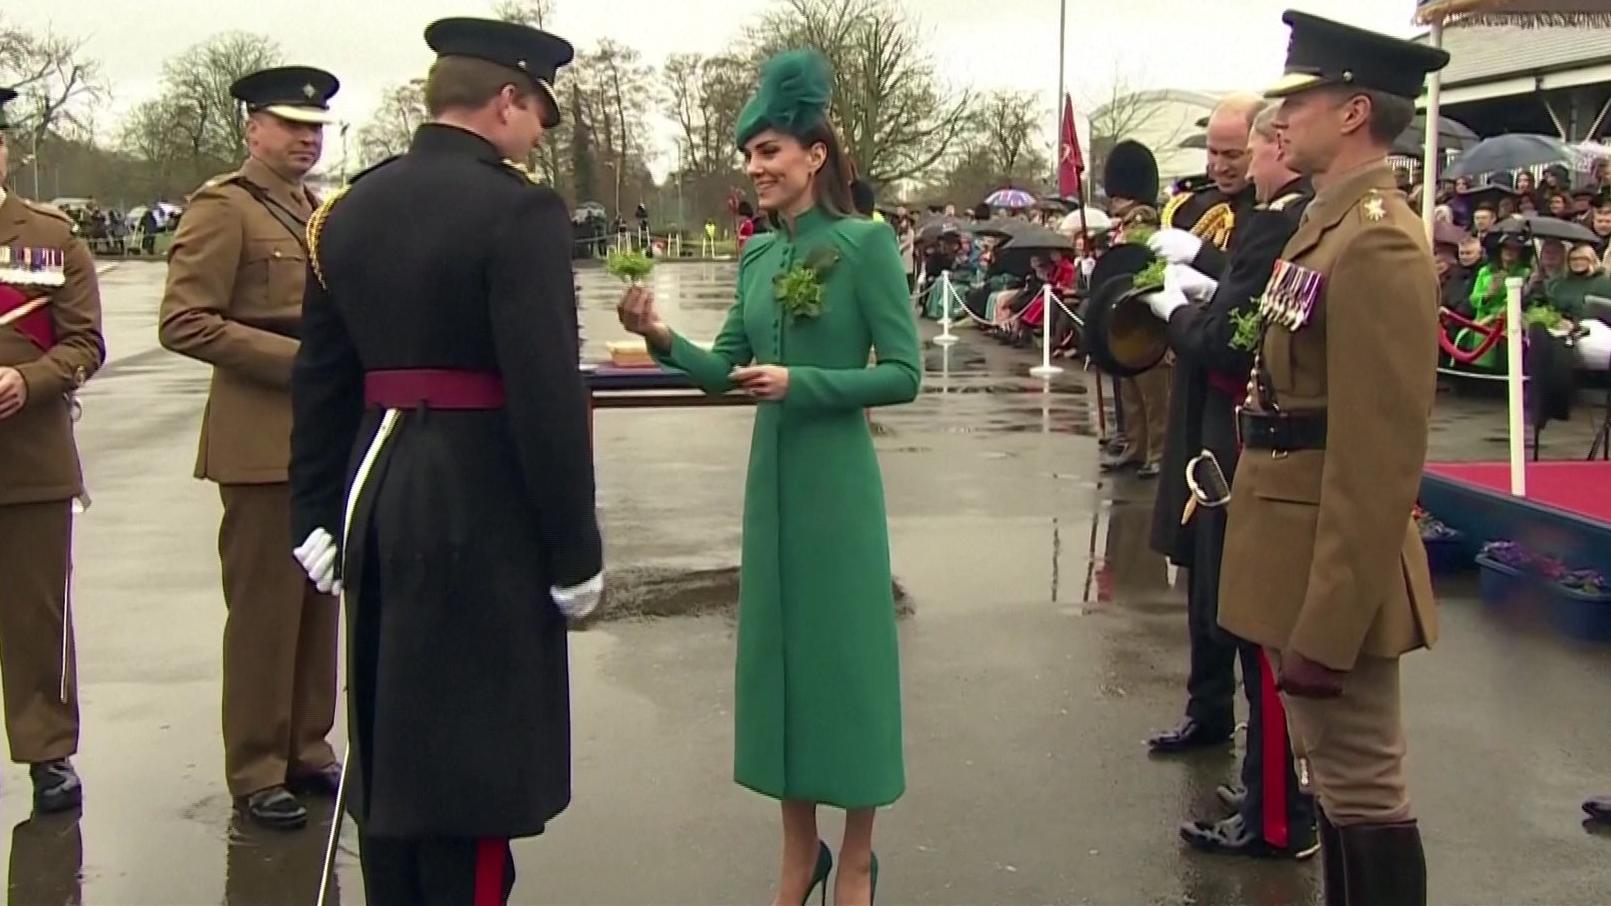 Prinzessin Catherine kam im eleganten Mantelkleid zu einer Parade der irischen Garde in Aldershot,